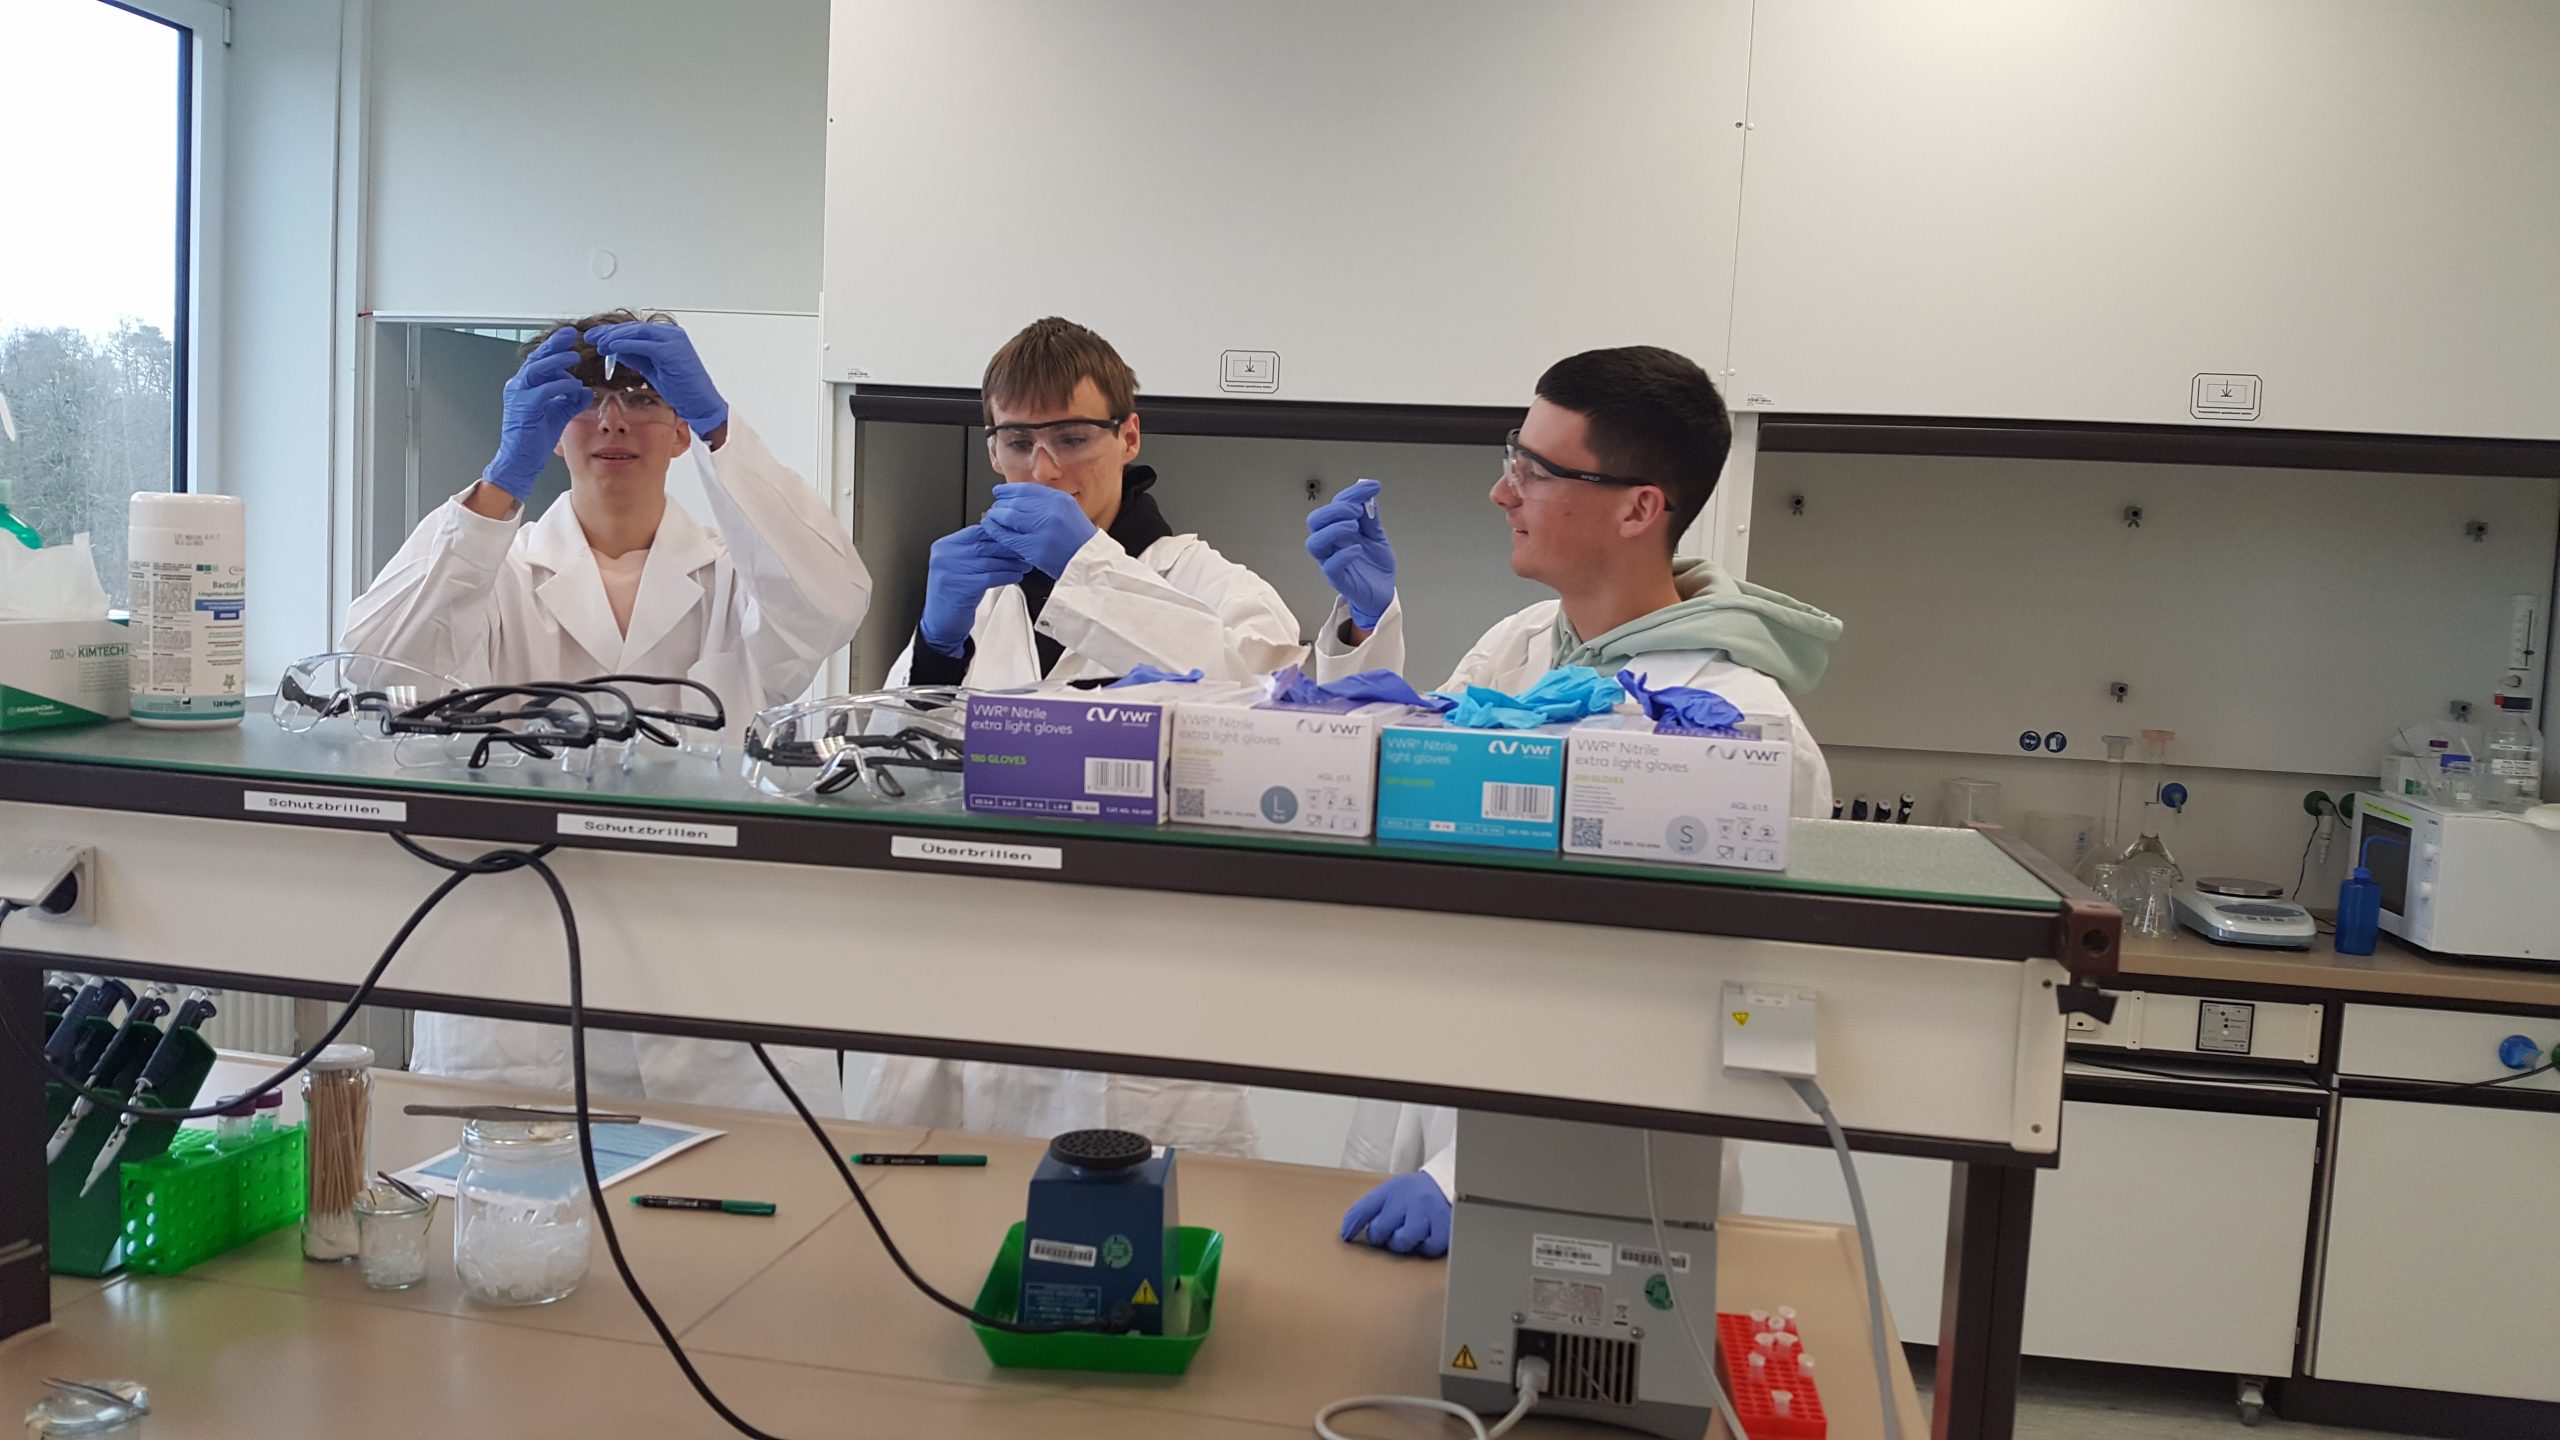 Auf diesem Bild sind Schülerinnen und Schüler in weißen Kitteln zu sehen, die im Labor arbeiten.